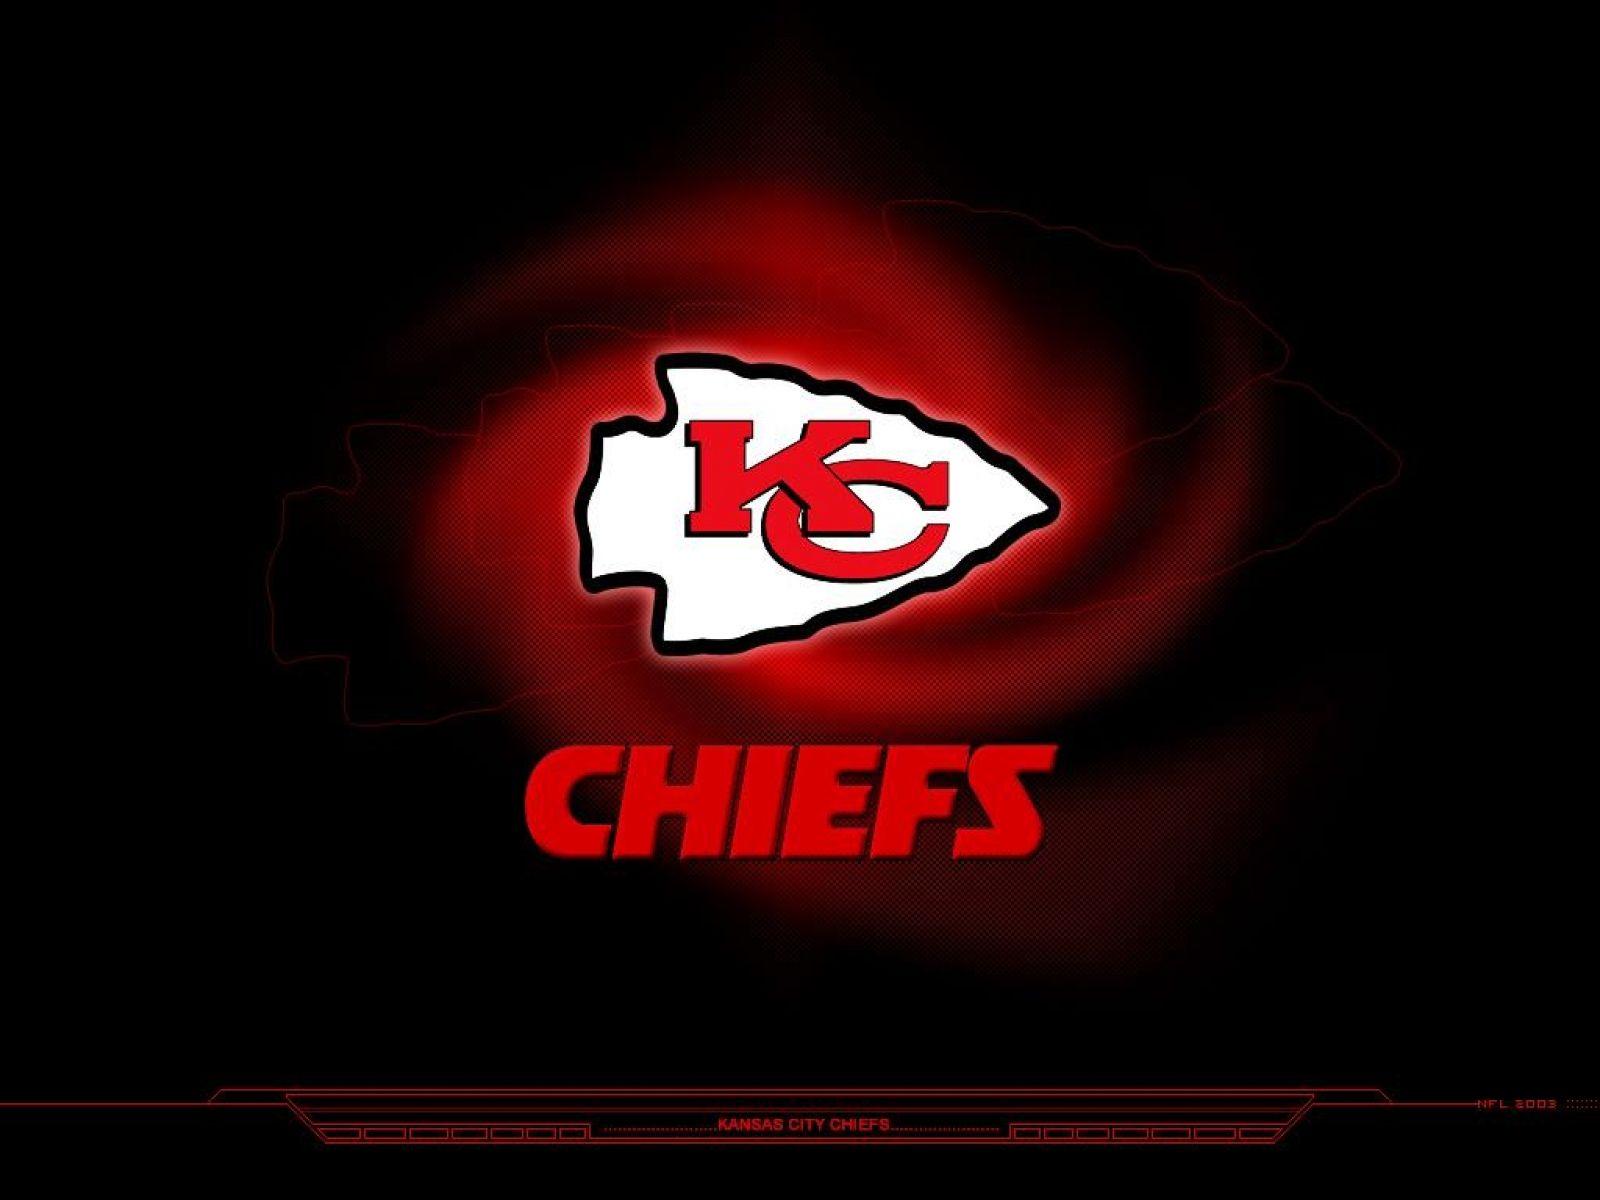 Kansas City Chiefs Wallpaper